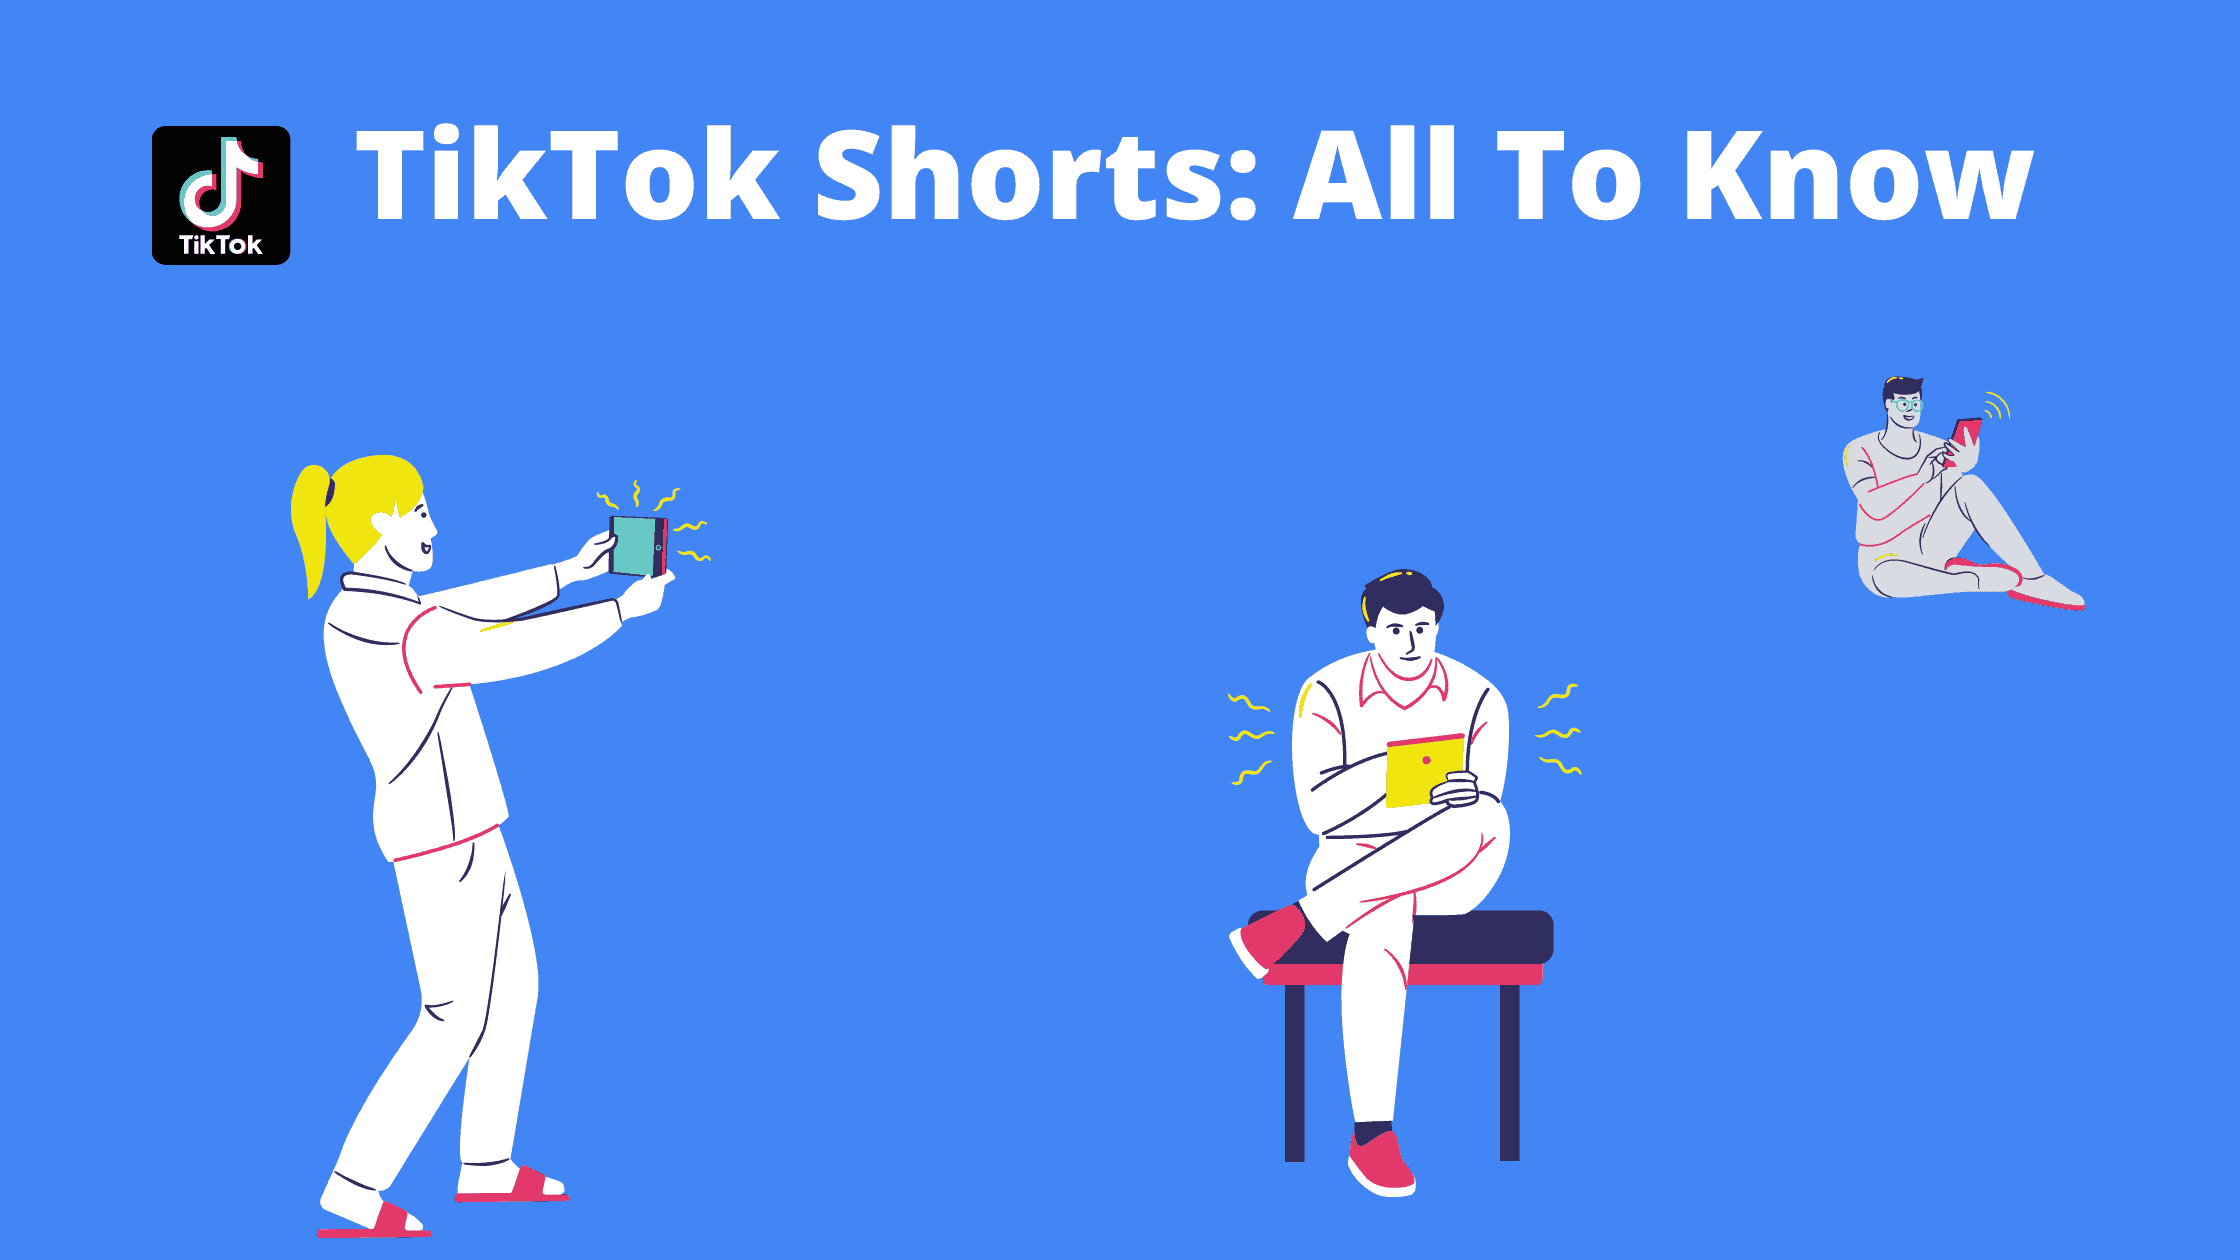 Ttktok shorts